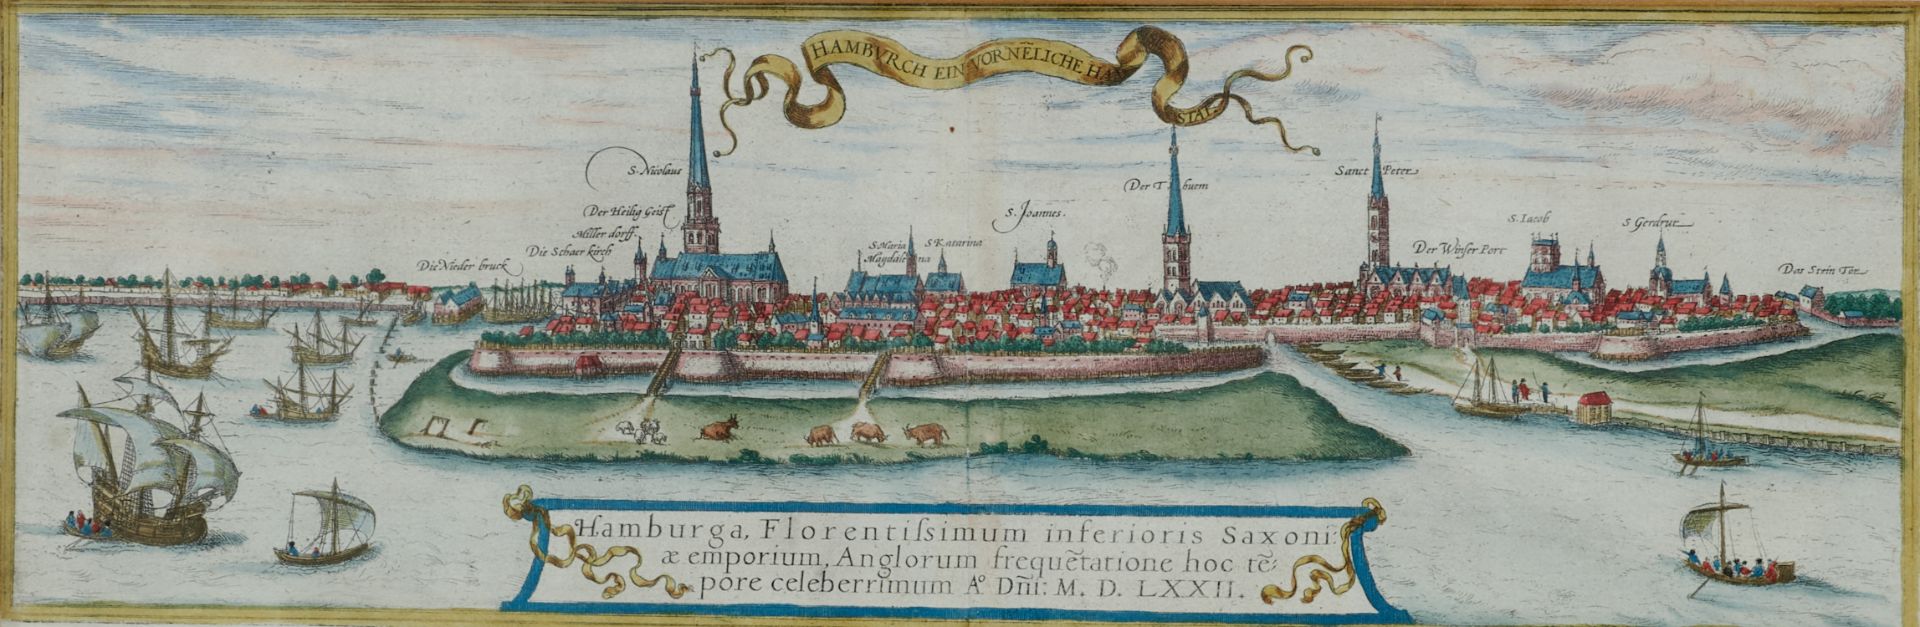 Hamburg - "Hamburga, florentissimum inferioris Saxoniae emporium ..." Gesamtansicht mit